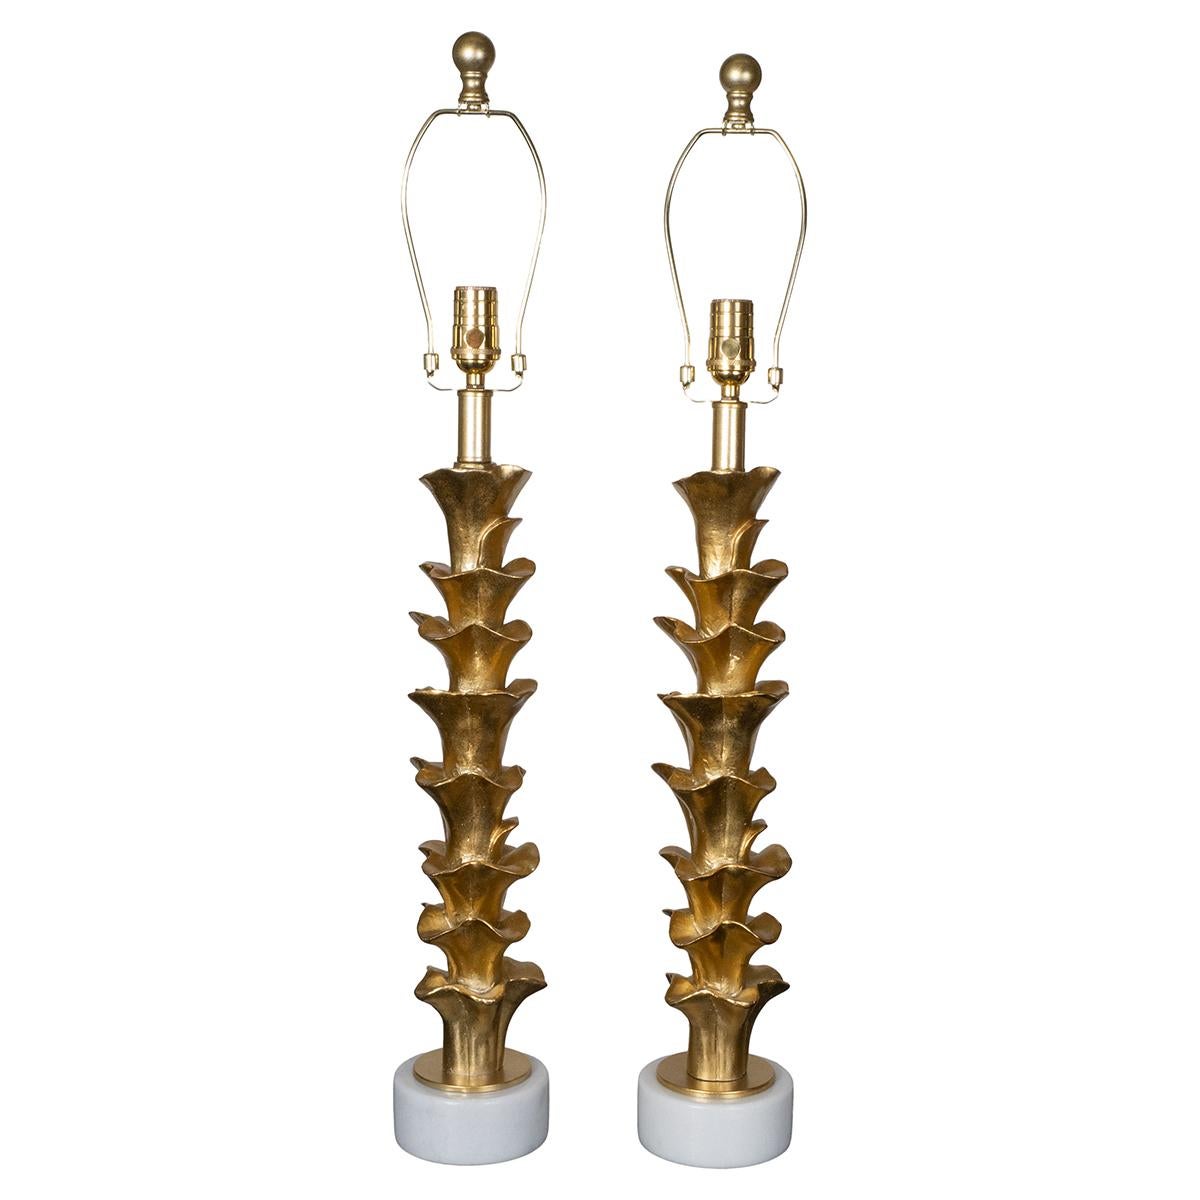 Paire de lampes de table en composition de forme organique sur des bases en pierre avec une finition dorée.